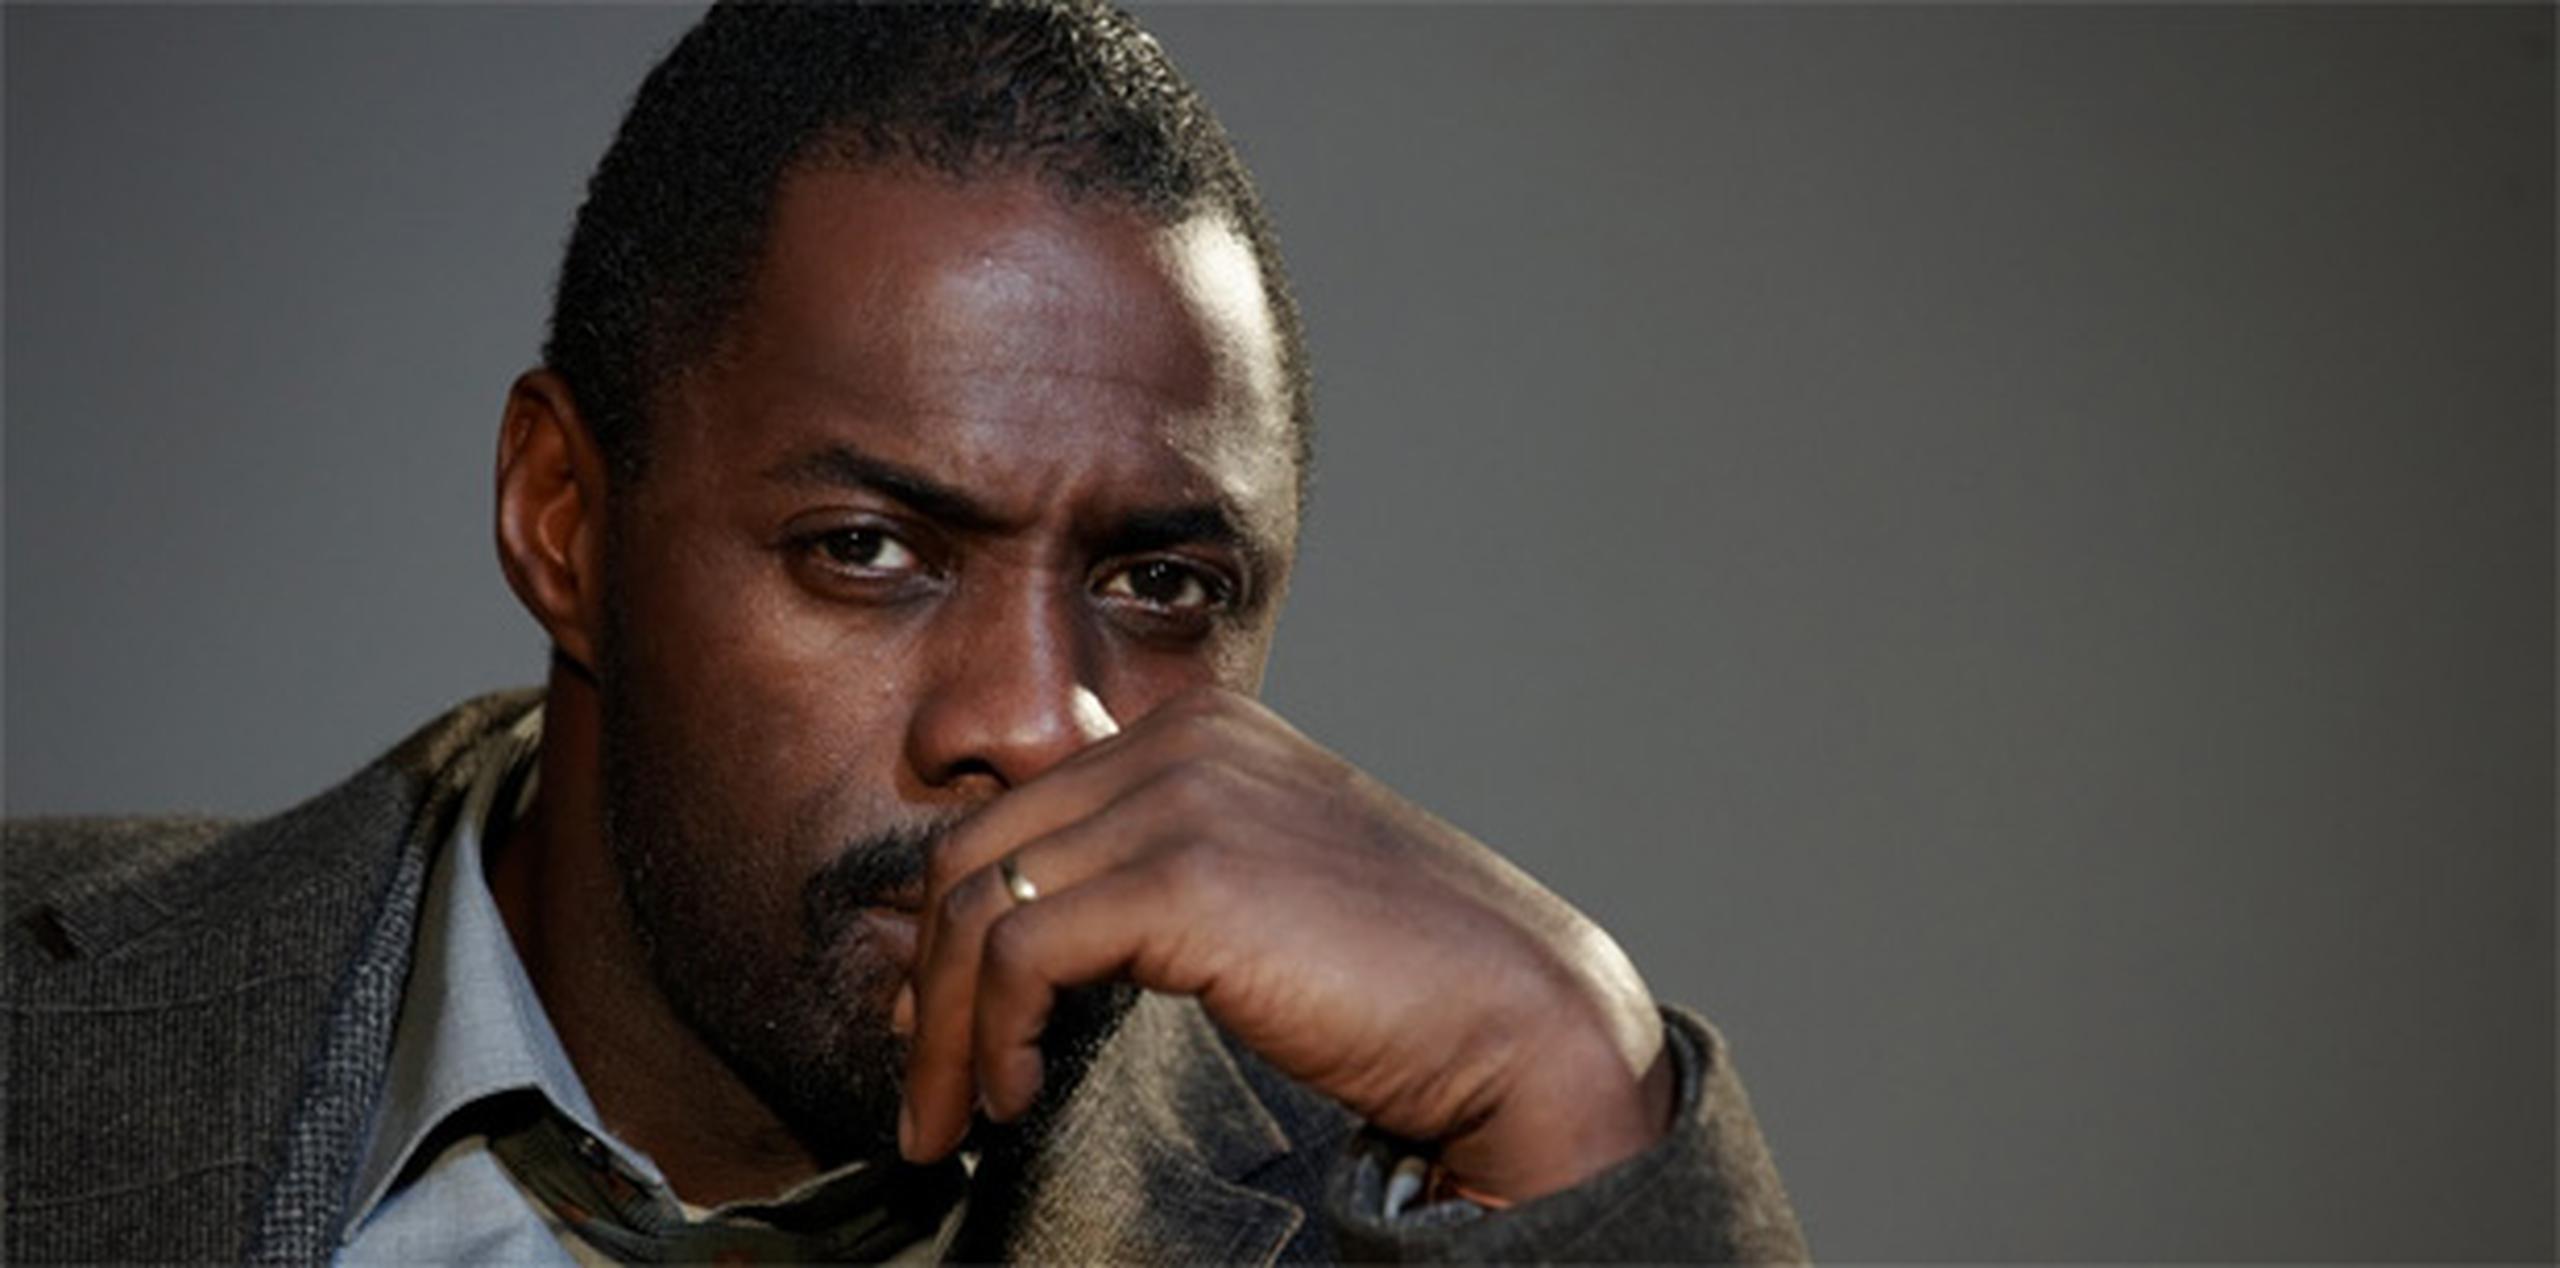 Al actor británico Idris Elba el éxito le empezó a llegar en forma de Globo de Oro por su detective Luther en el drama policial de la BBC.